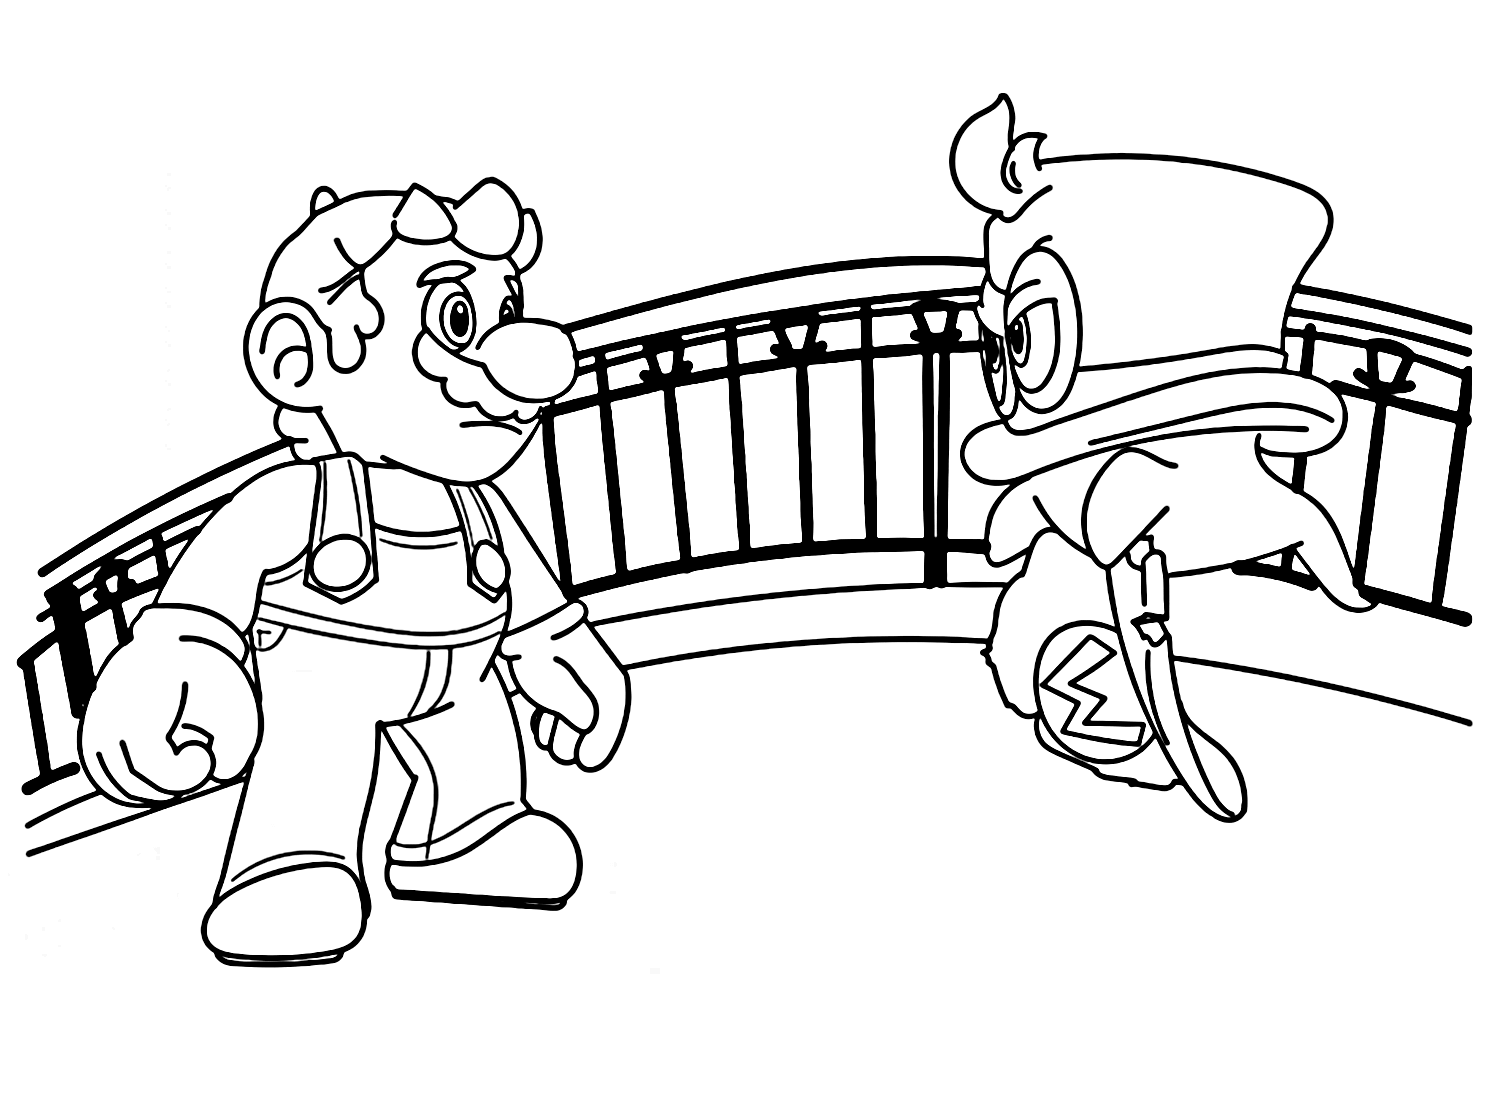 Mario Odyssey Mario and Cappy Coloring Page